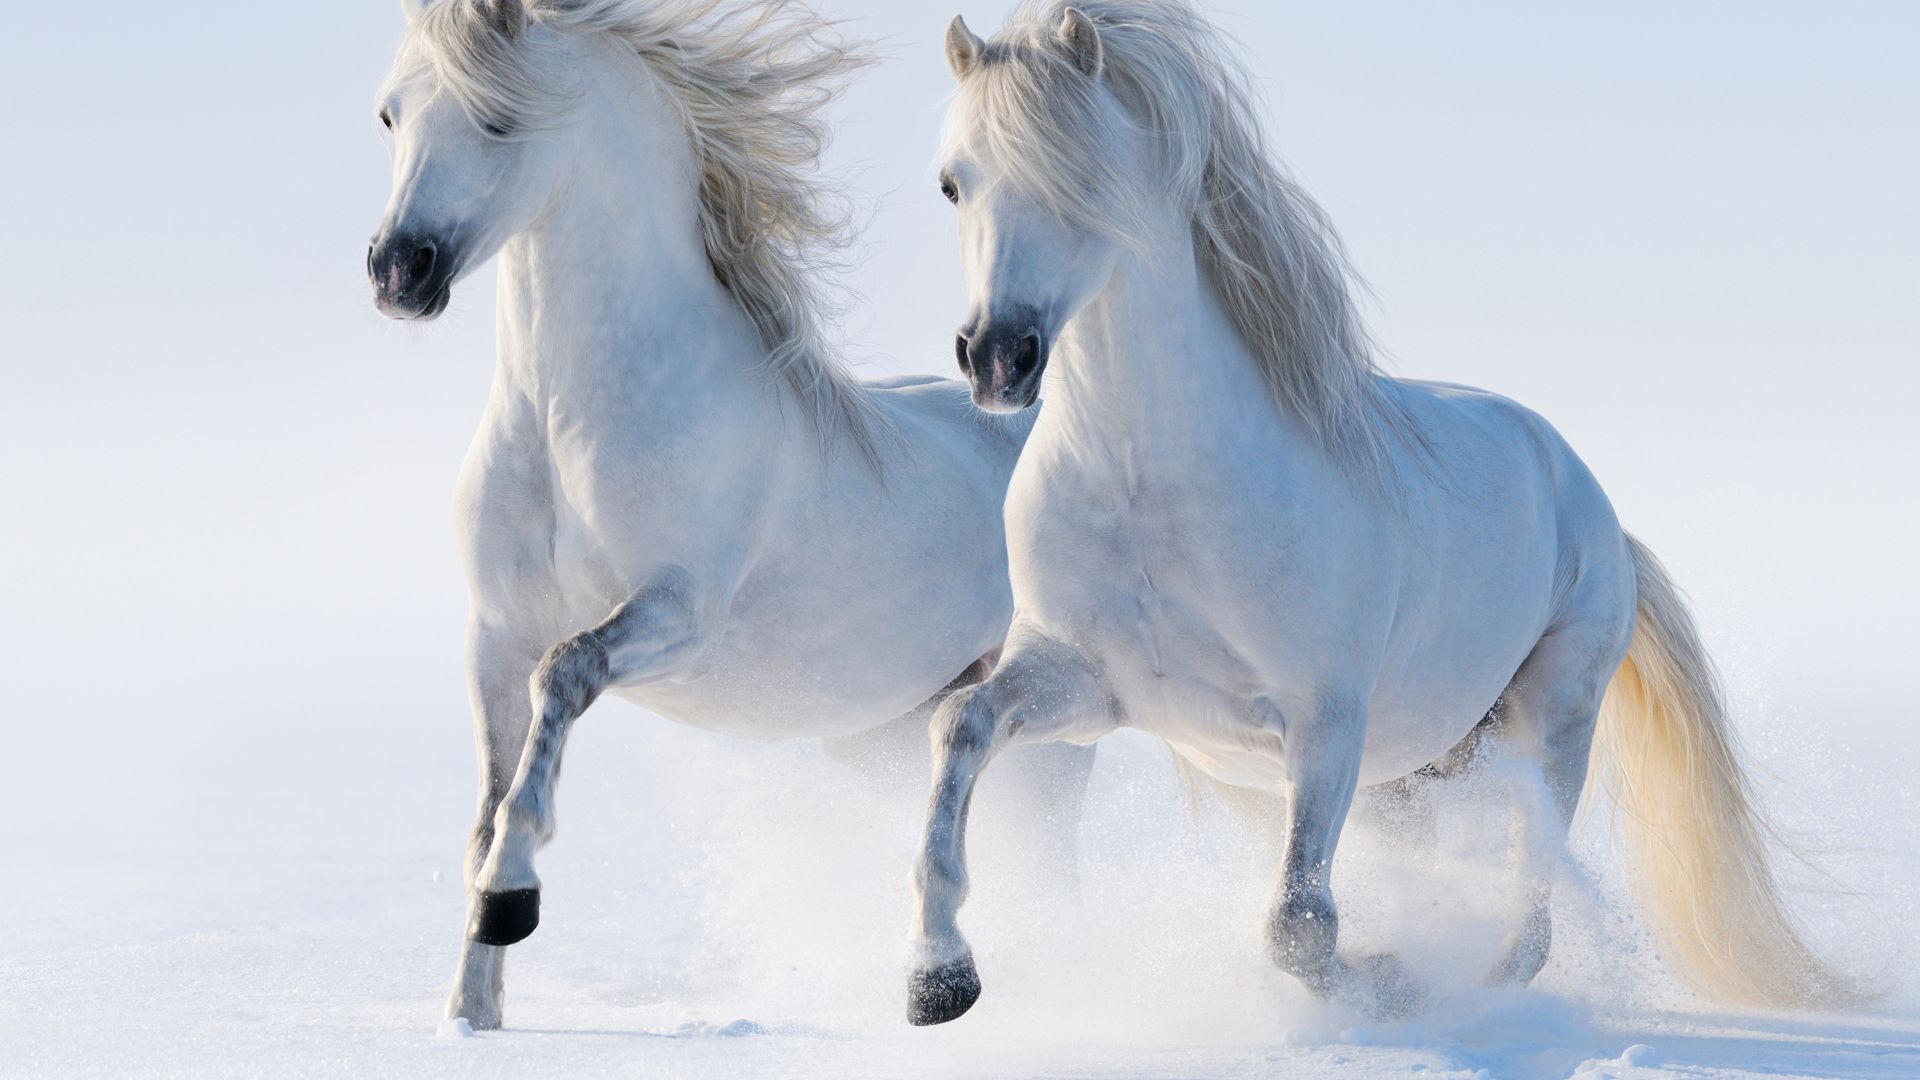 лошади, horses, cute animals, snow, winter, 5k (horizontal)